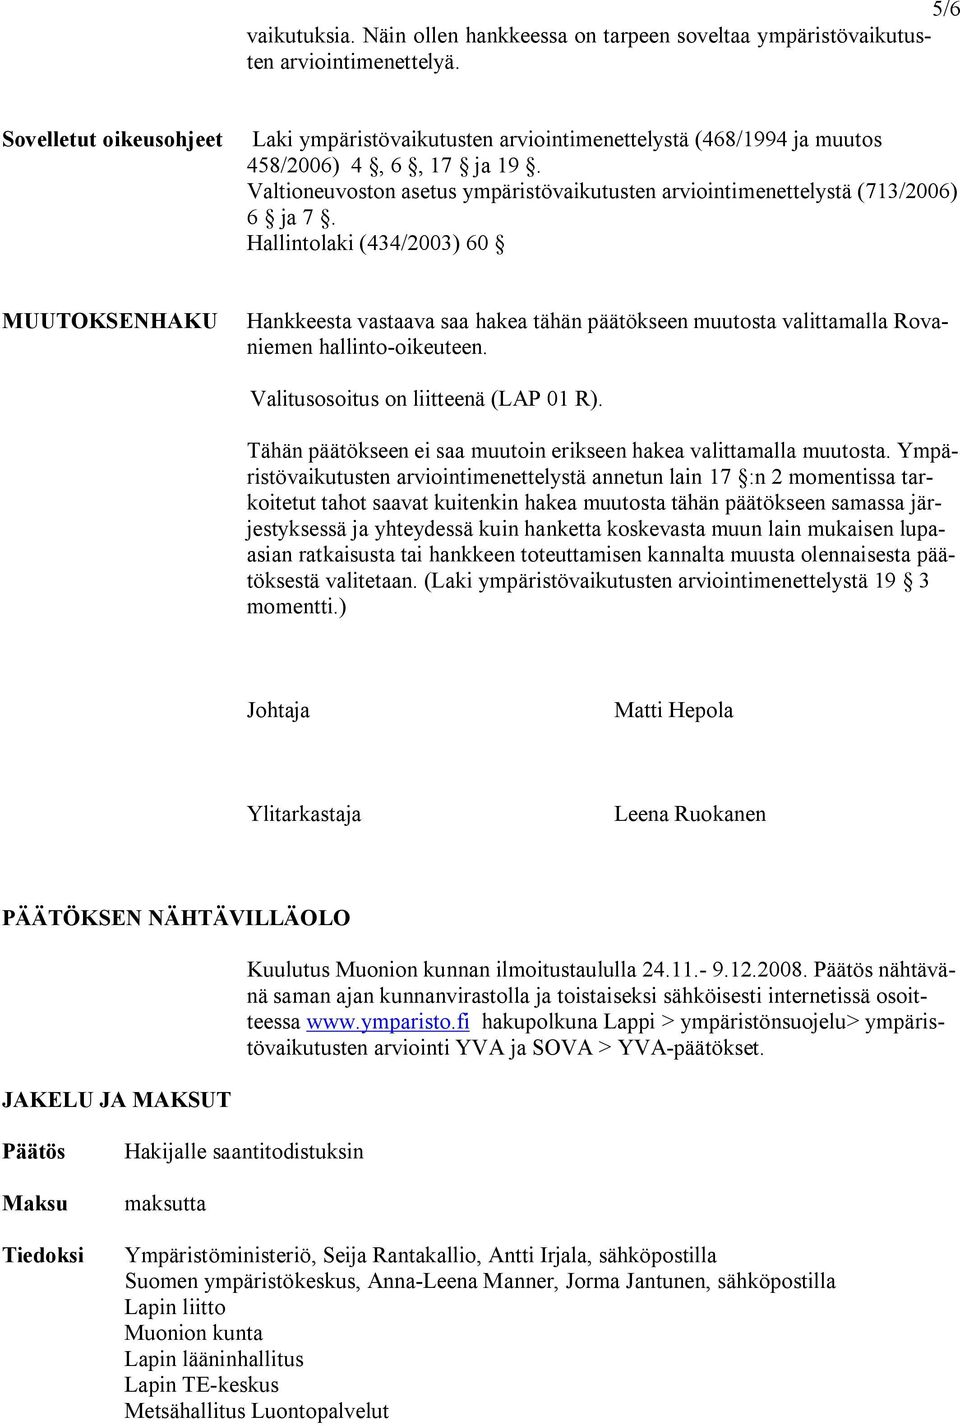 Valtioneuvoston asetus ympäristövaikutusten arviointimenettelystä (713/2006) 6 ja 7.